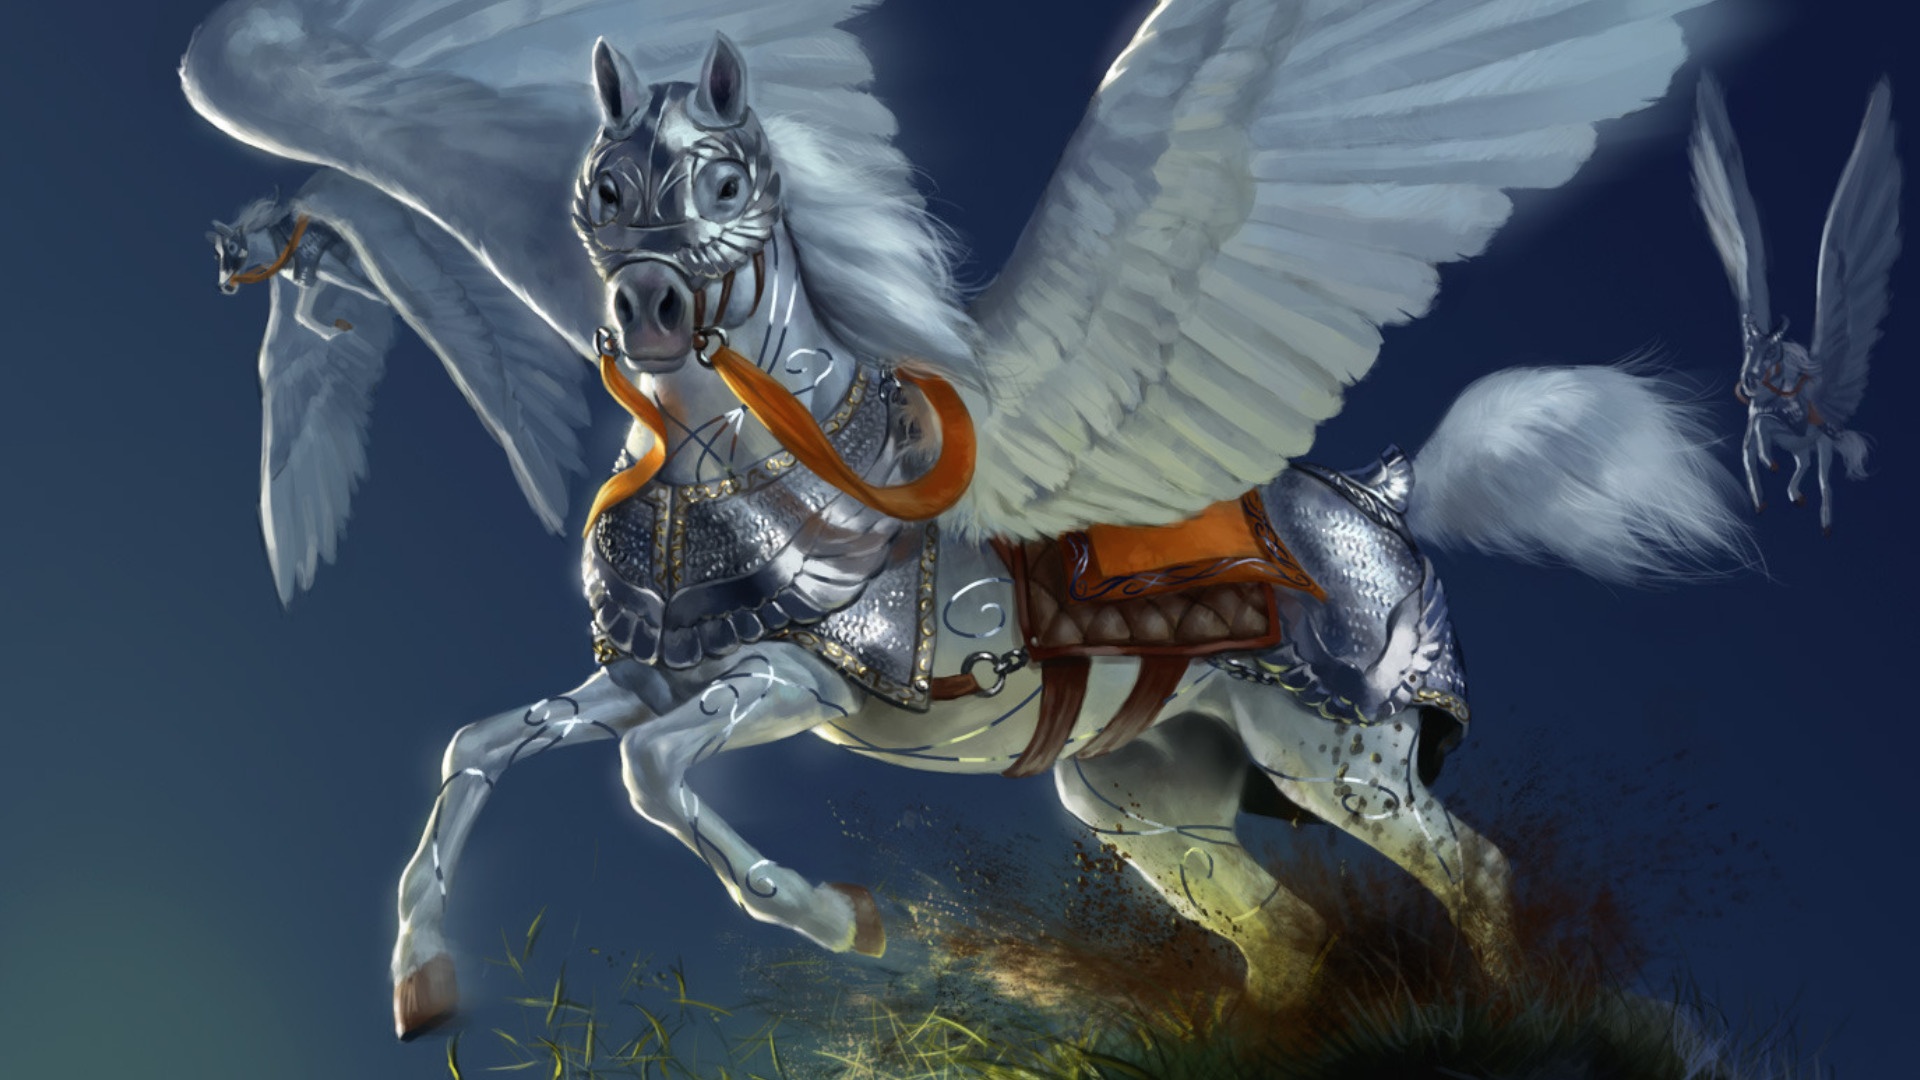 Magic Horses wallpaper for desktop